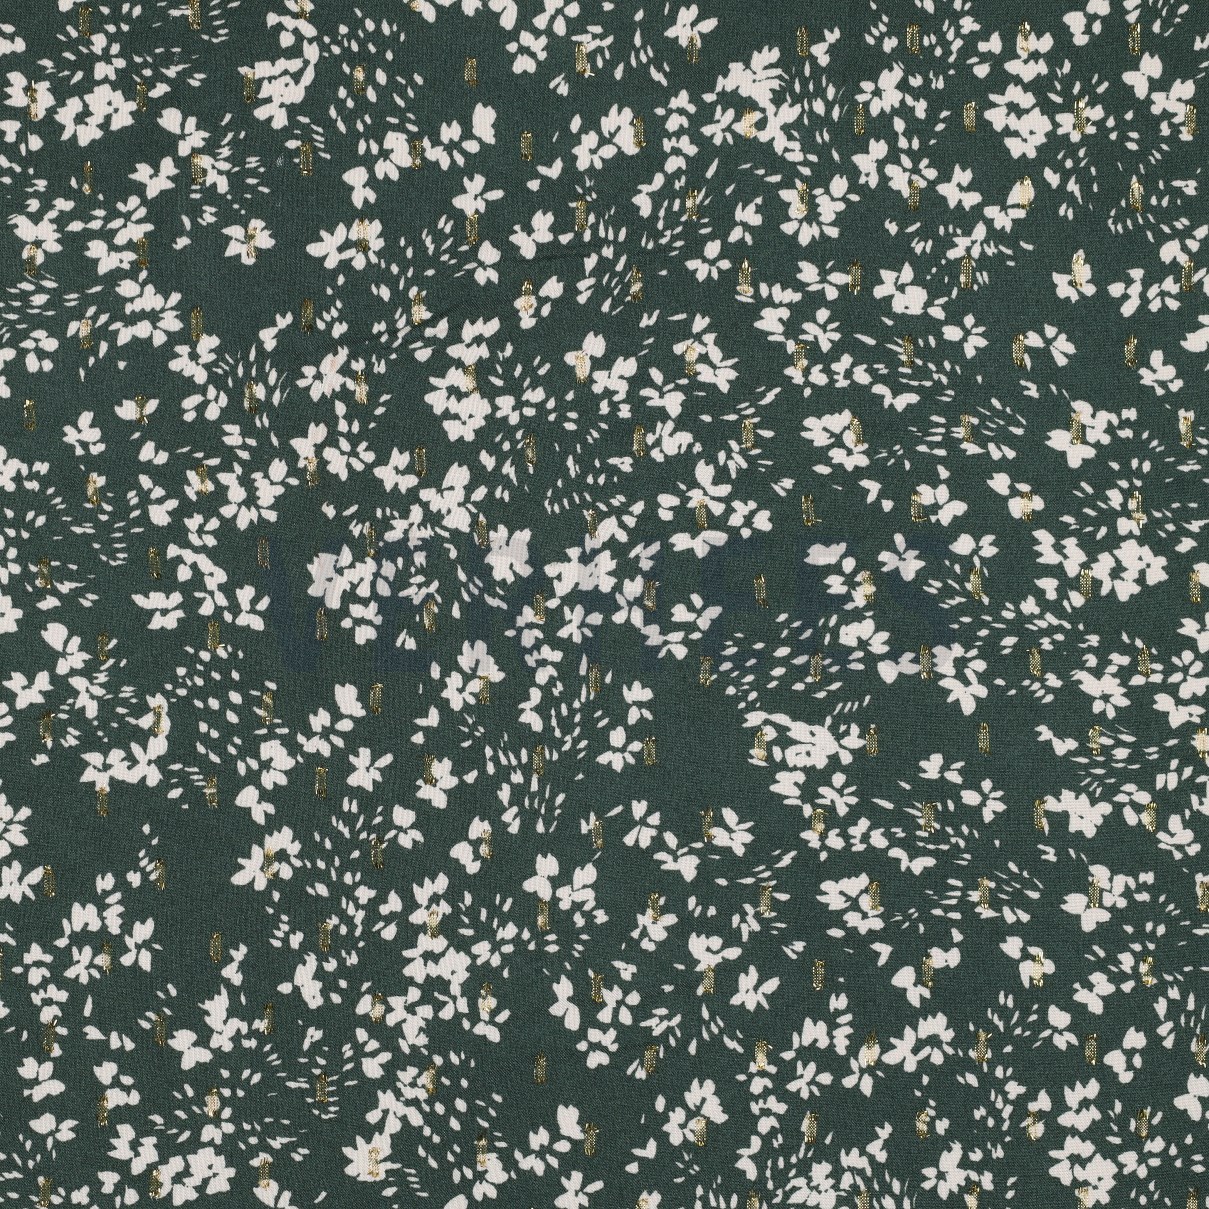 VISCOSE LUREX FLOWERS DARK MINT (high resolution)